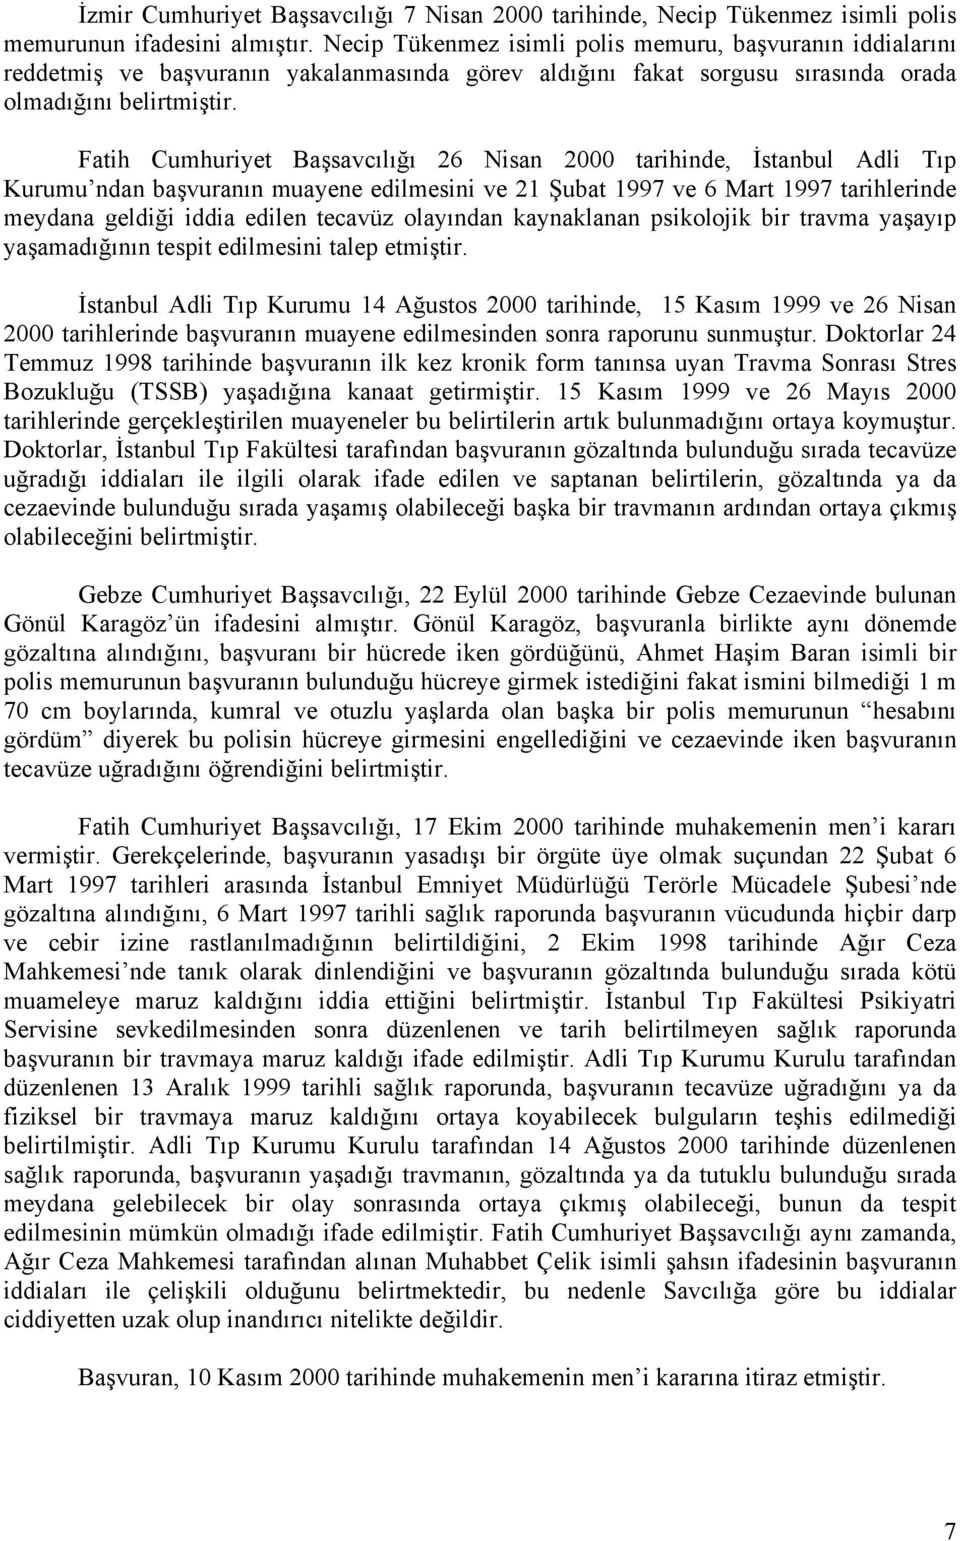 Fatih Cumhuriyet Başsavcılığı 26 Nisan 2000 tarihinde, İstanbul Adli Tıp Kurumu ndan başvuranın muayene edilmesini ve 21 Şubat 1997 ve 6 Mart 1997 tarihlerinde meydana geldiği iddia edilen tecavüz